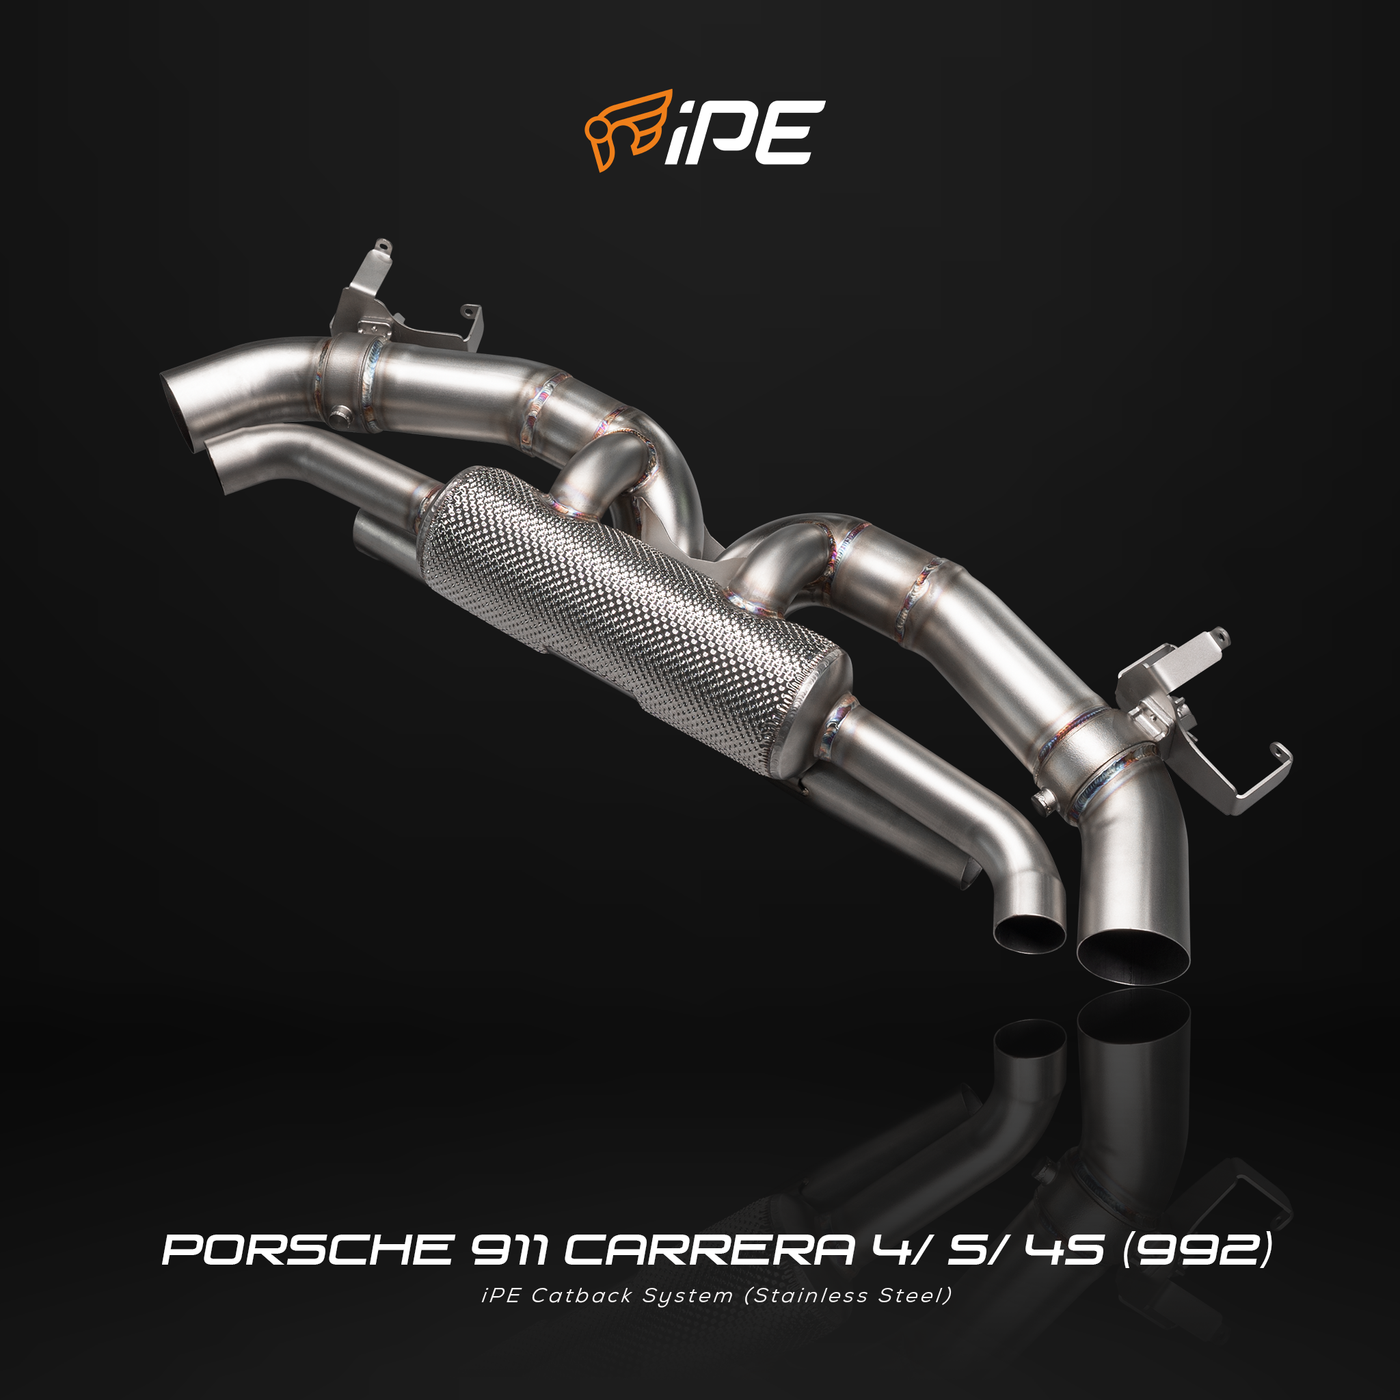 Porsche 911 Carrera / 4 / S / 4S (992) Exhaust System – iPE Official